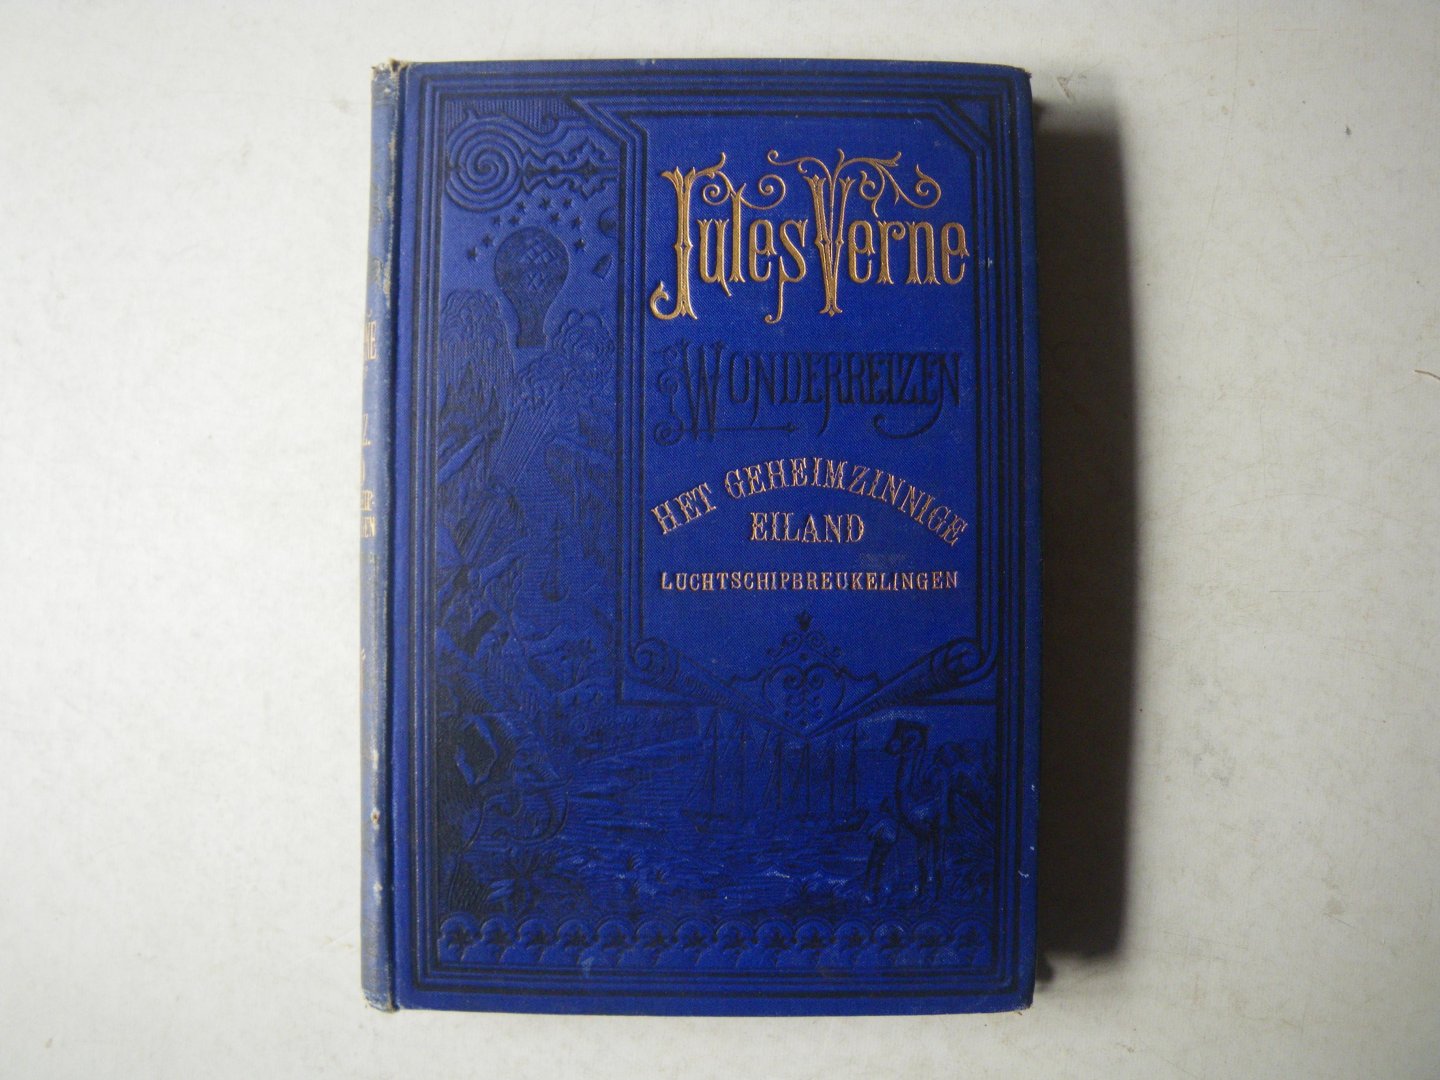 Verne, Jules - Wonderreizen: Het geheimzinnige eiland , De Luchtschipbreukelingen (naar de 20e fransche uitgave door Gerard Keller)